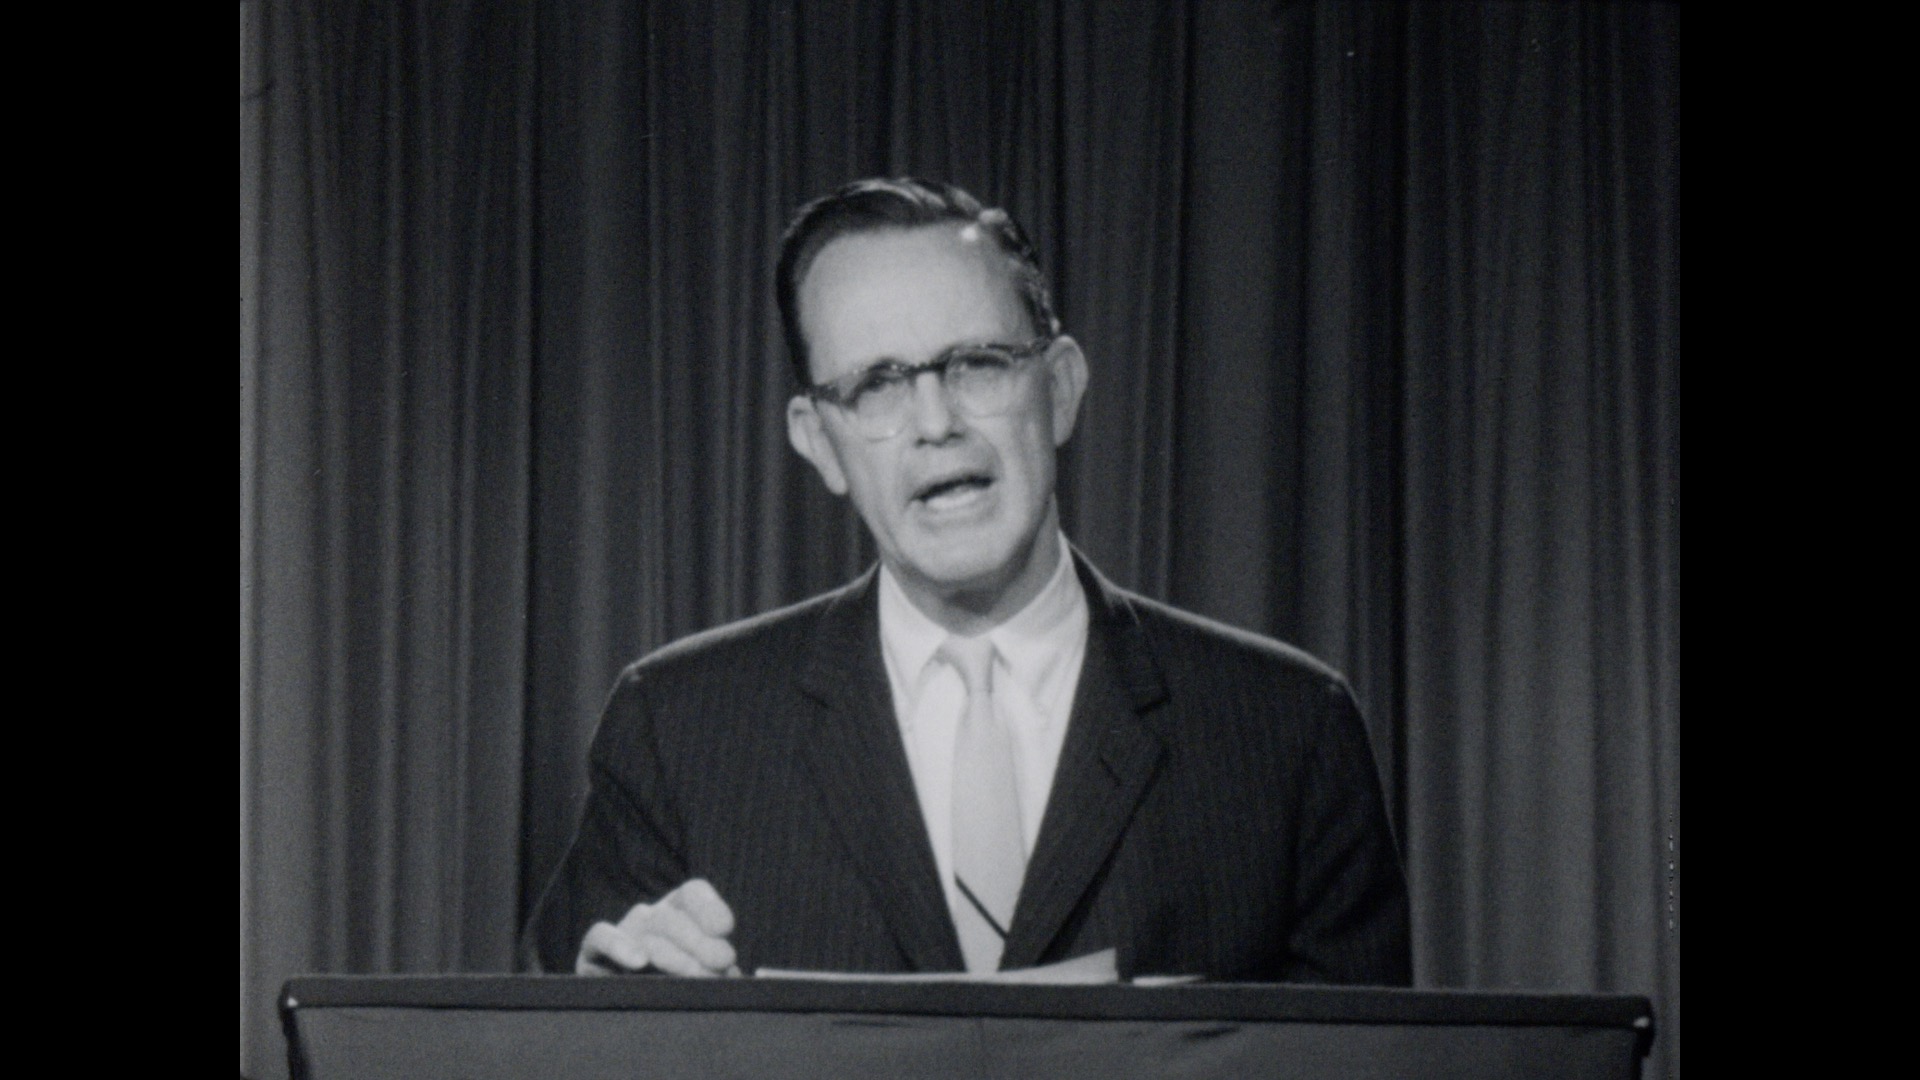 Senator Hart Speech, 1960